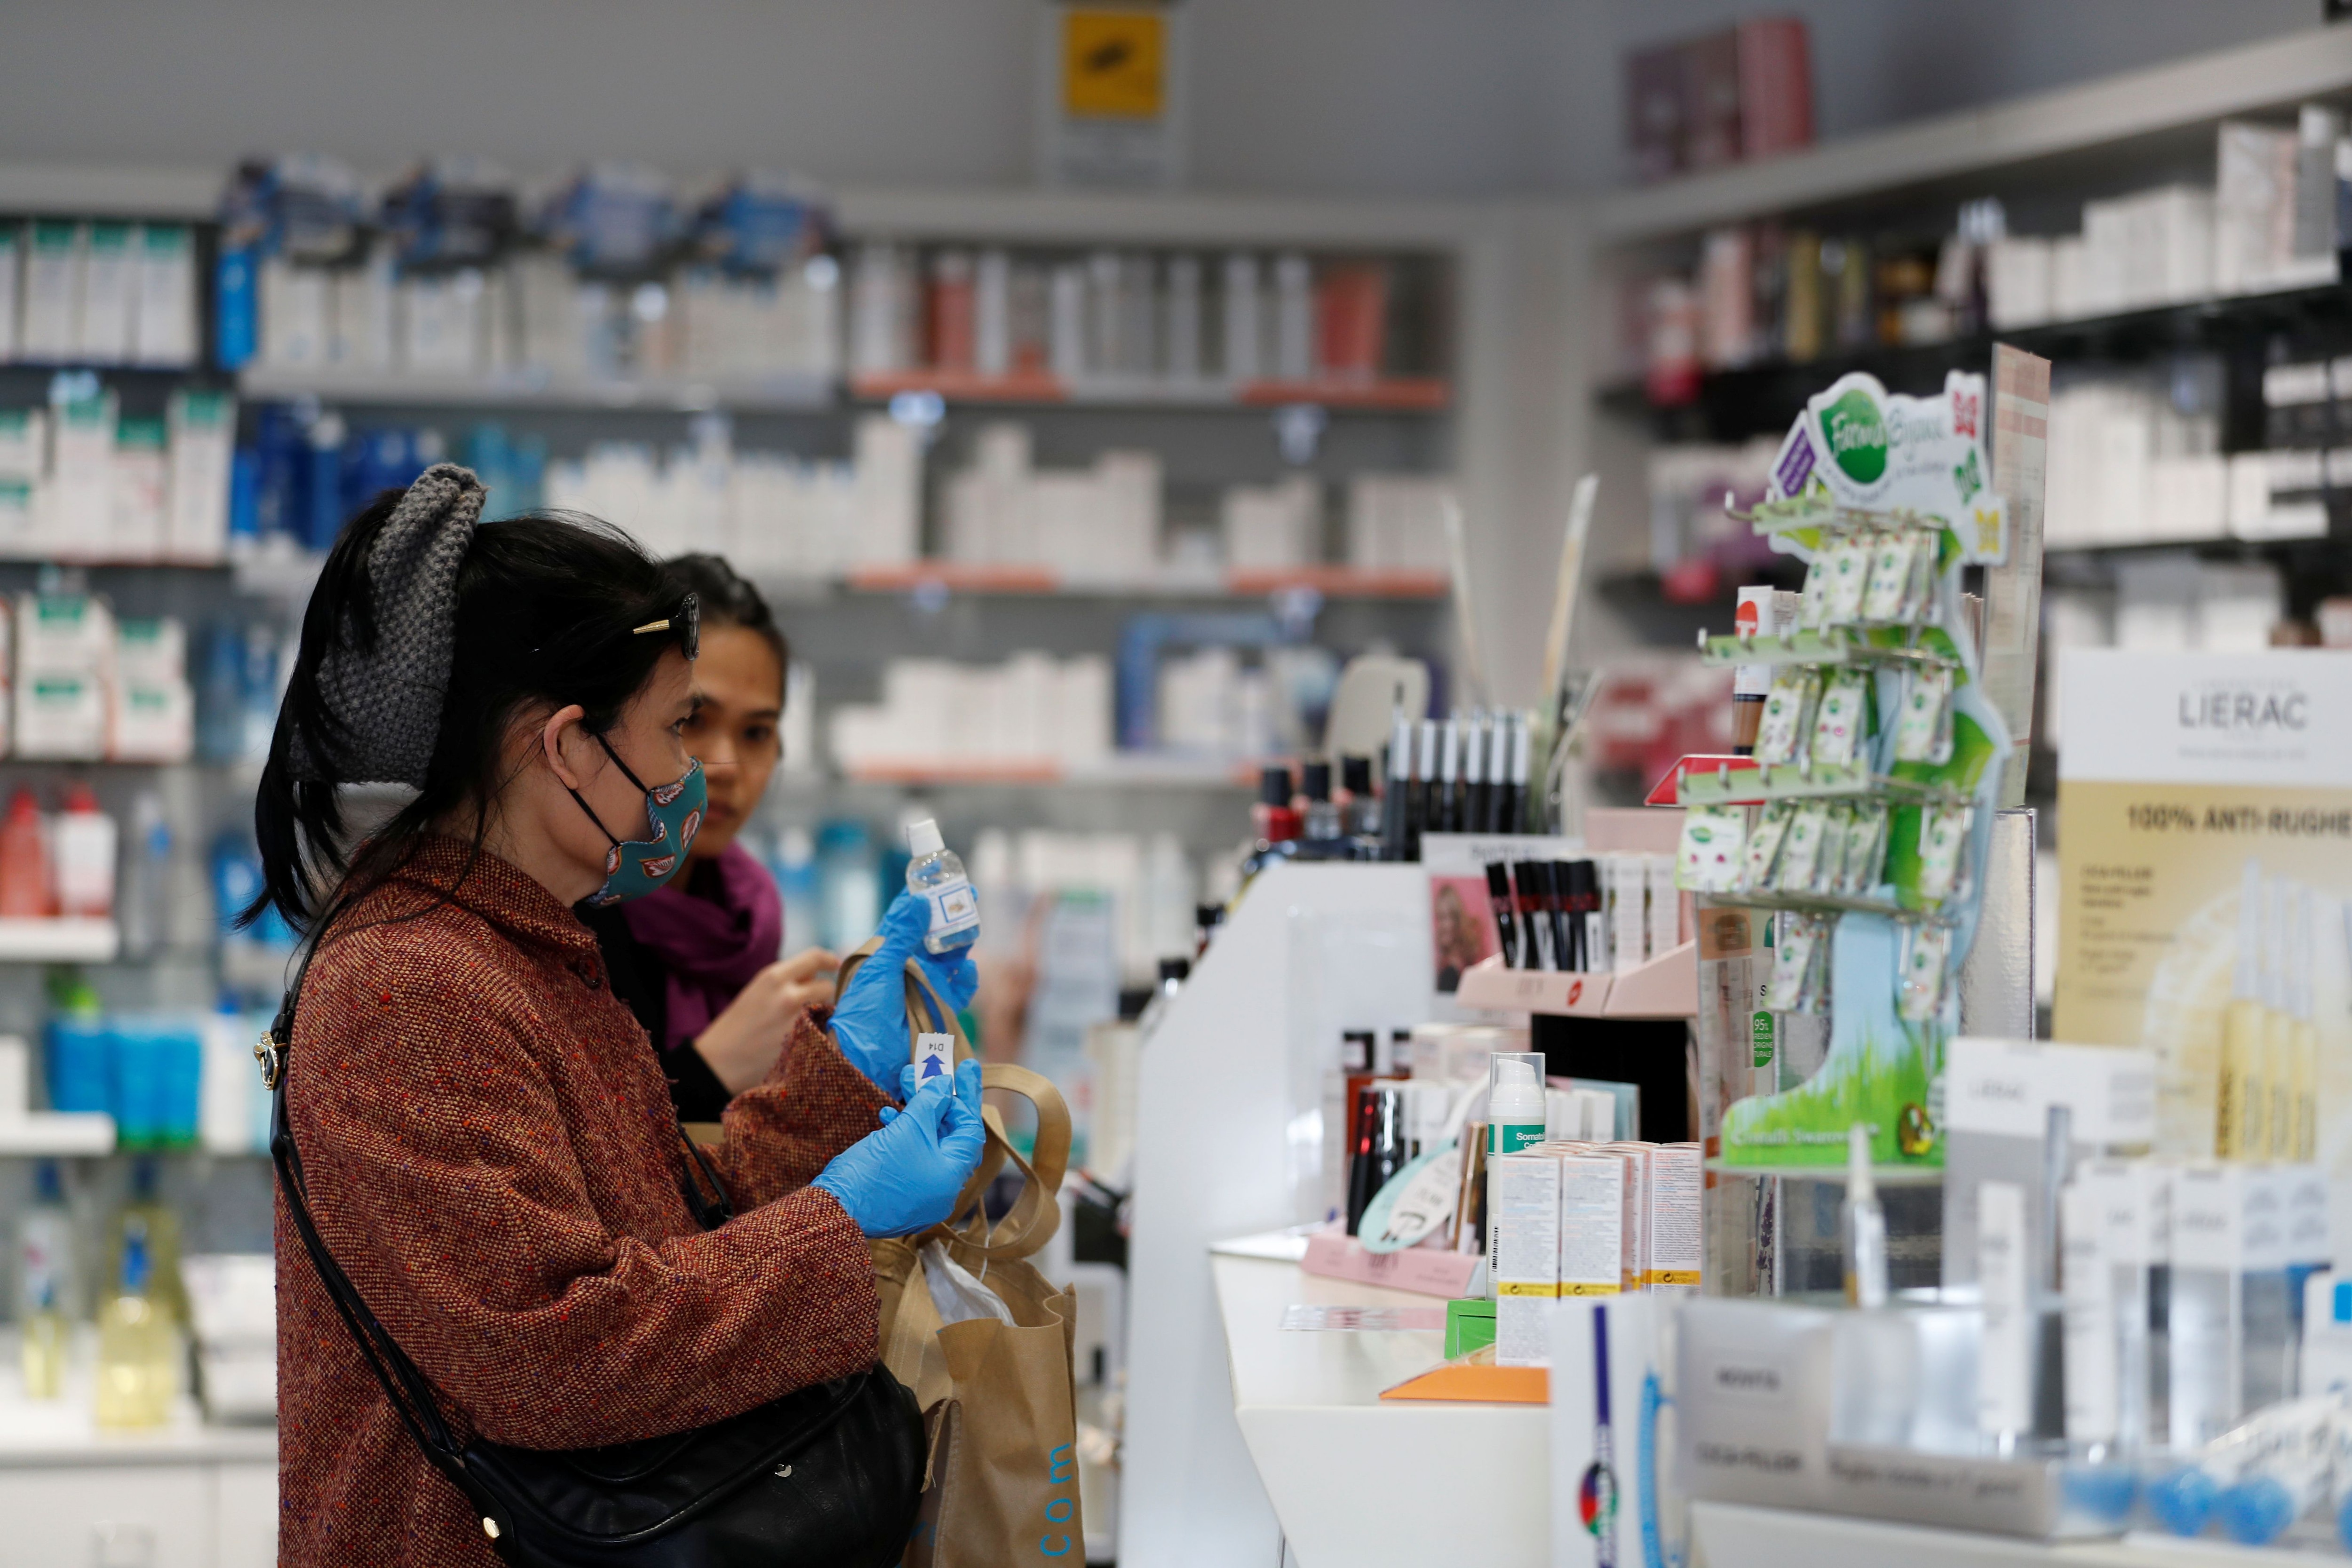 Las farmacias que cuenten con laboratorios habilitados van a poder fabricar estos productos. (Reuters/Yara Nardi)